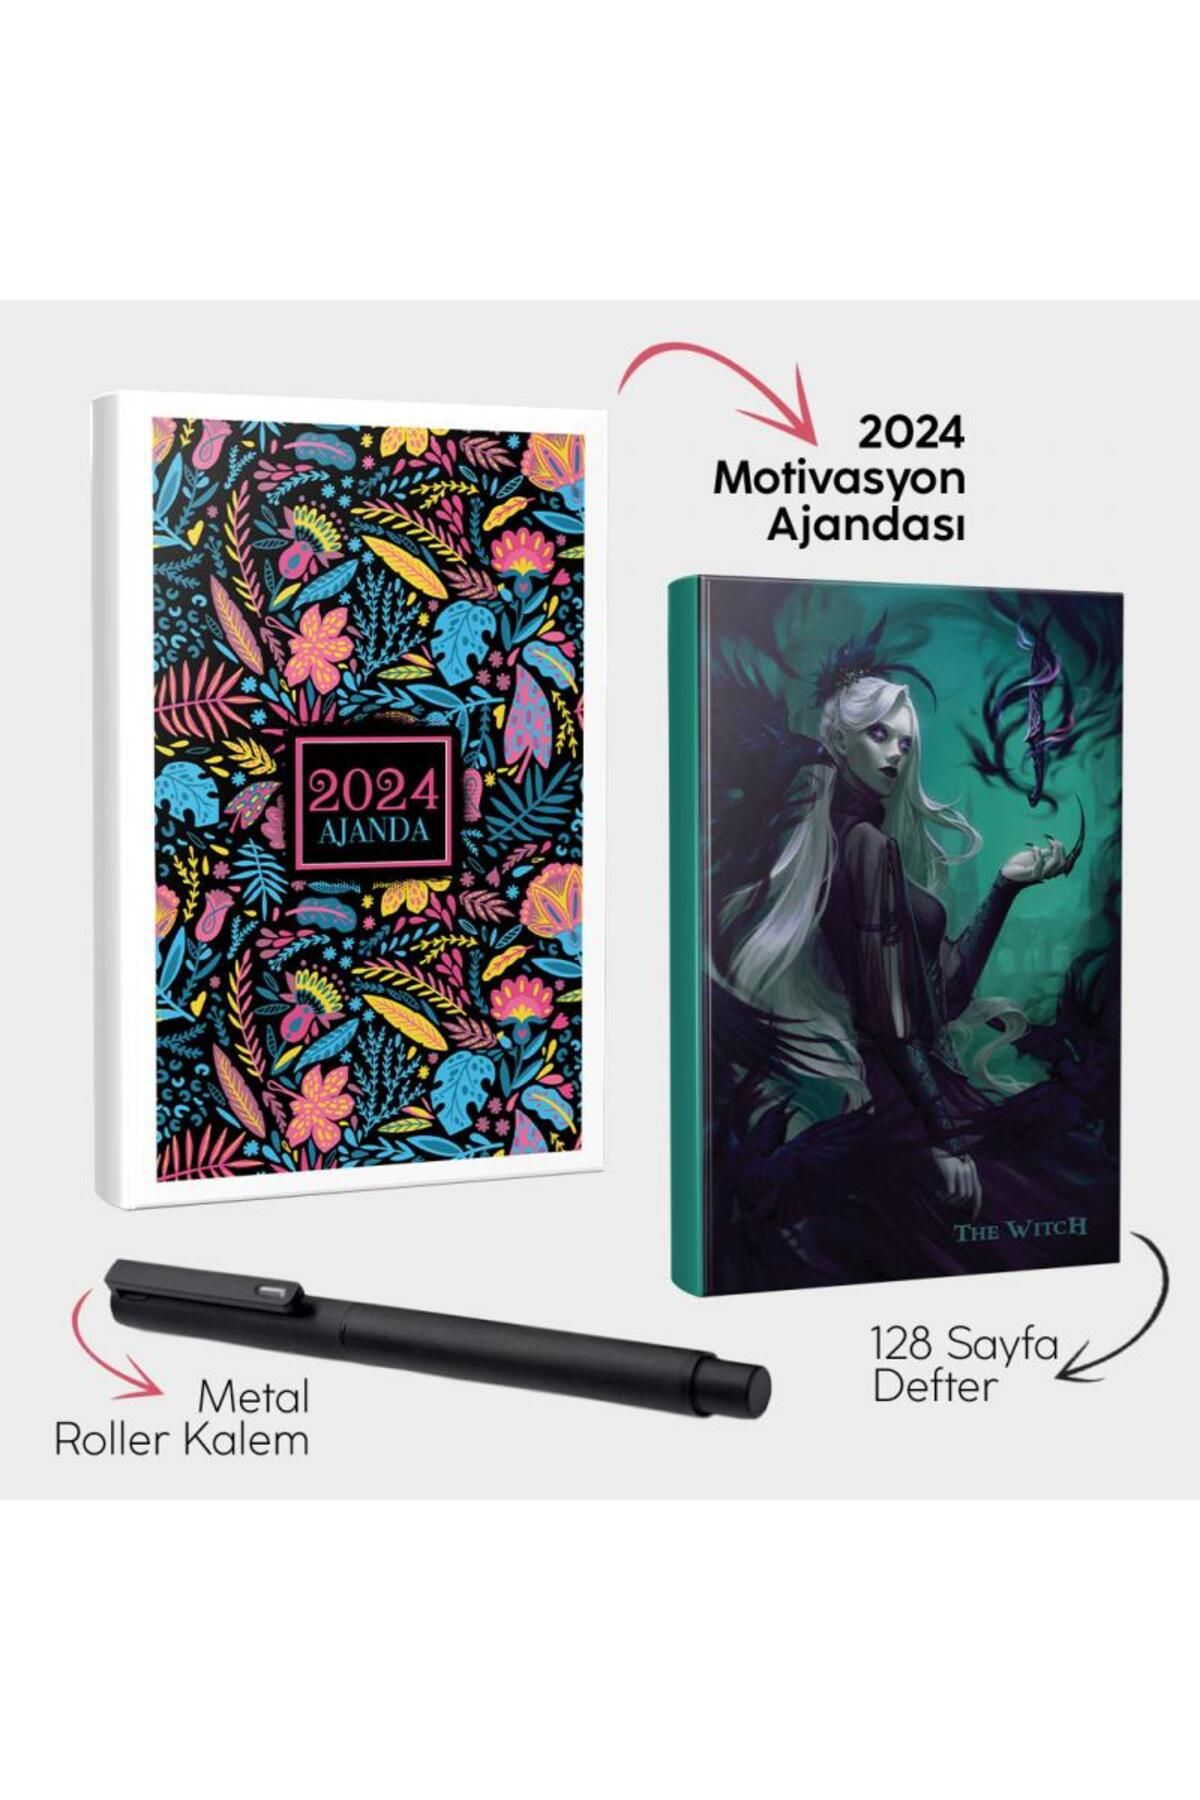 Halk Kitabevi Neon Düşler 2024 Motivasyon Ajandası - The Witch Defter ve Metal Roller Kalem